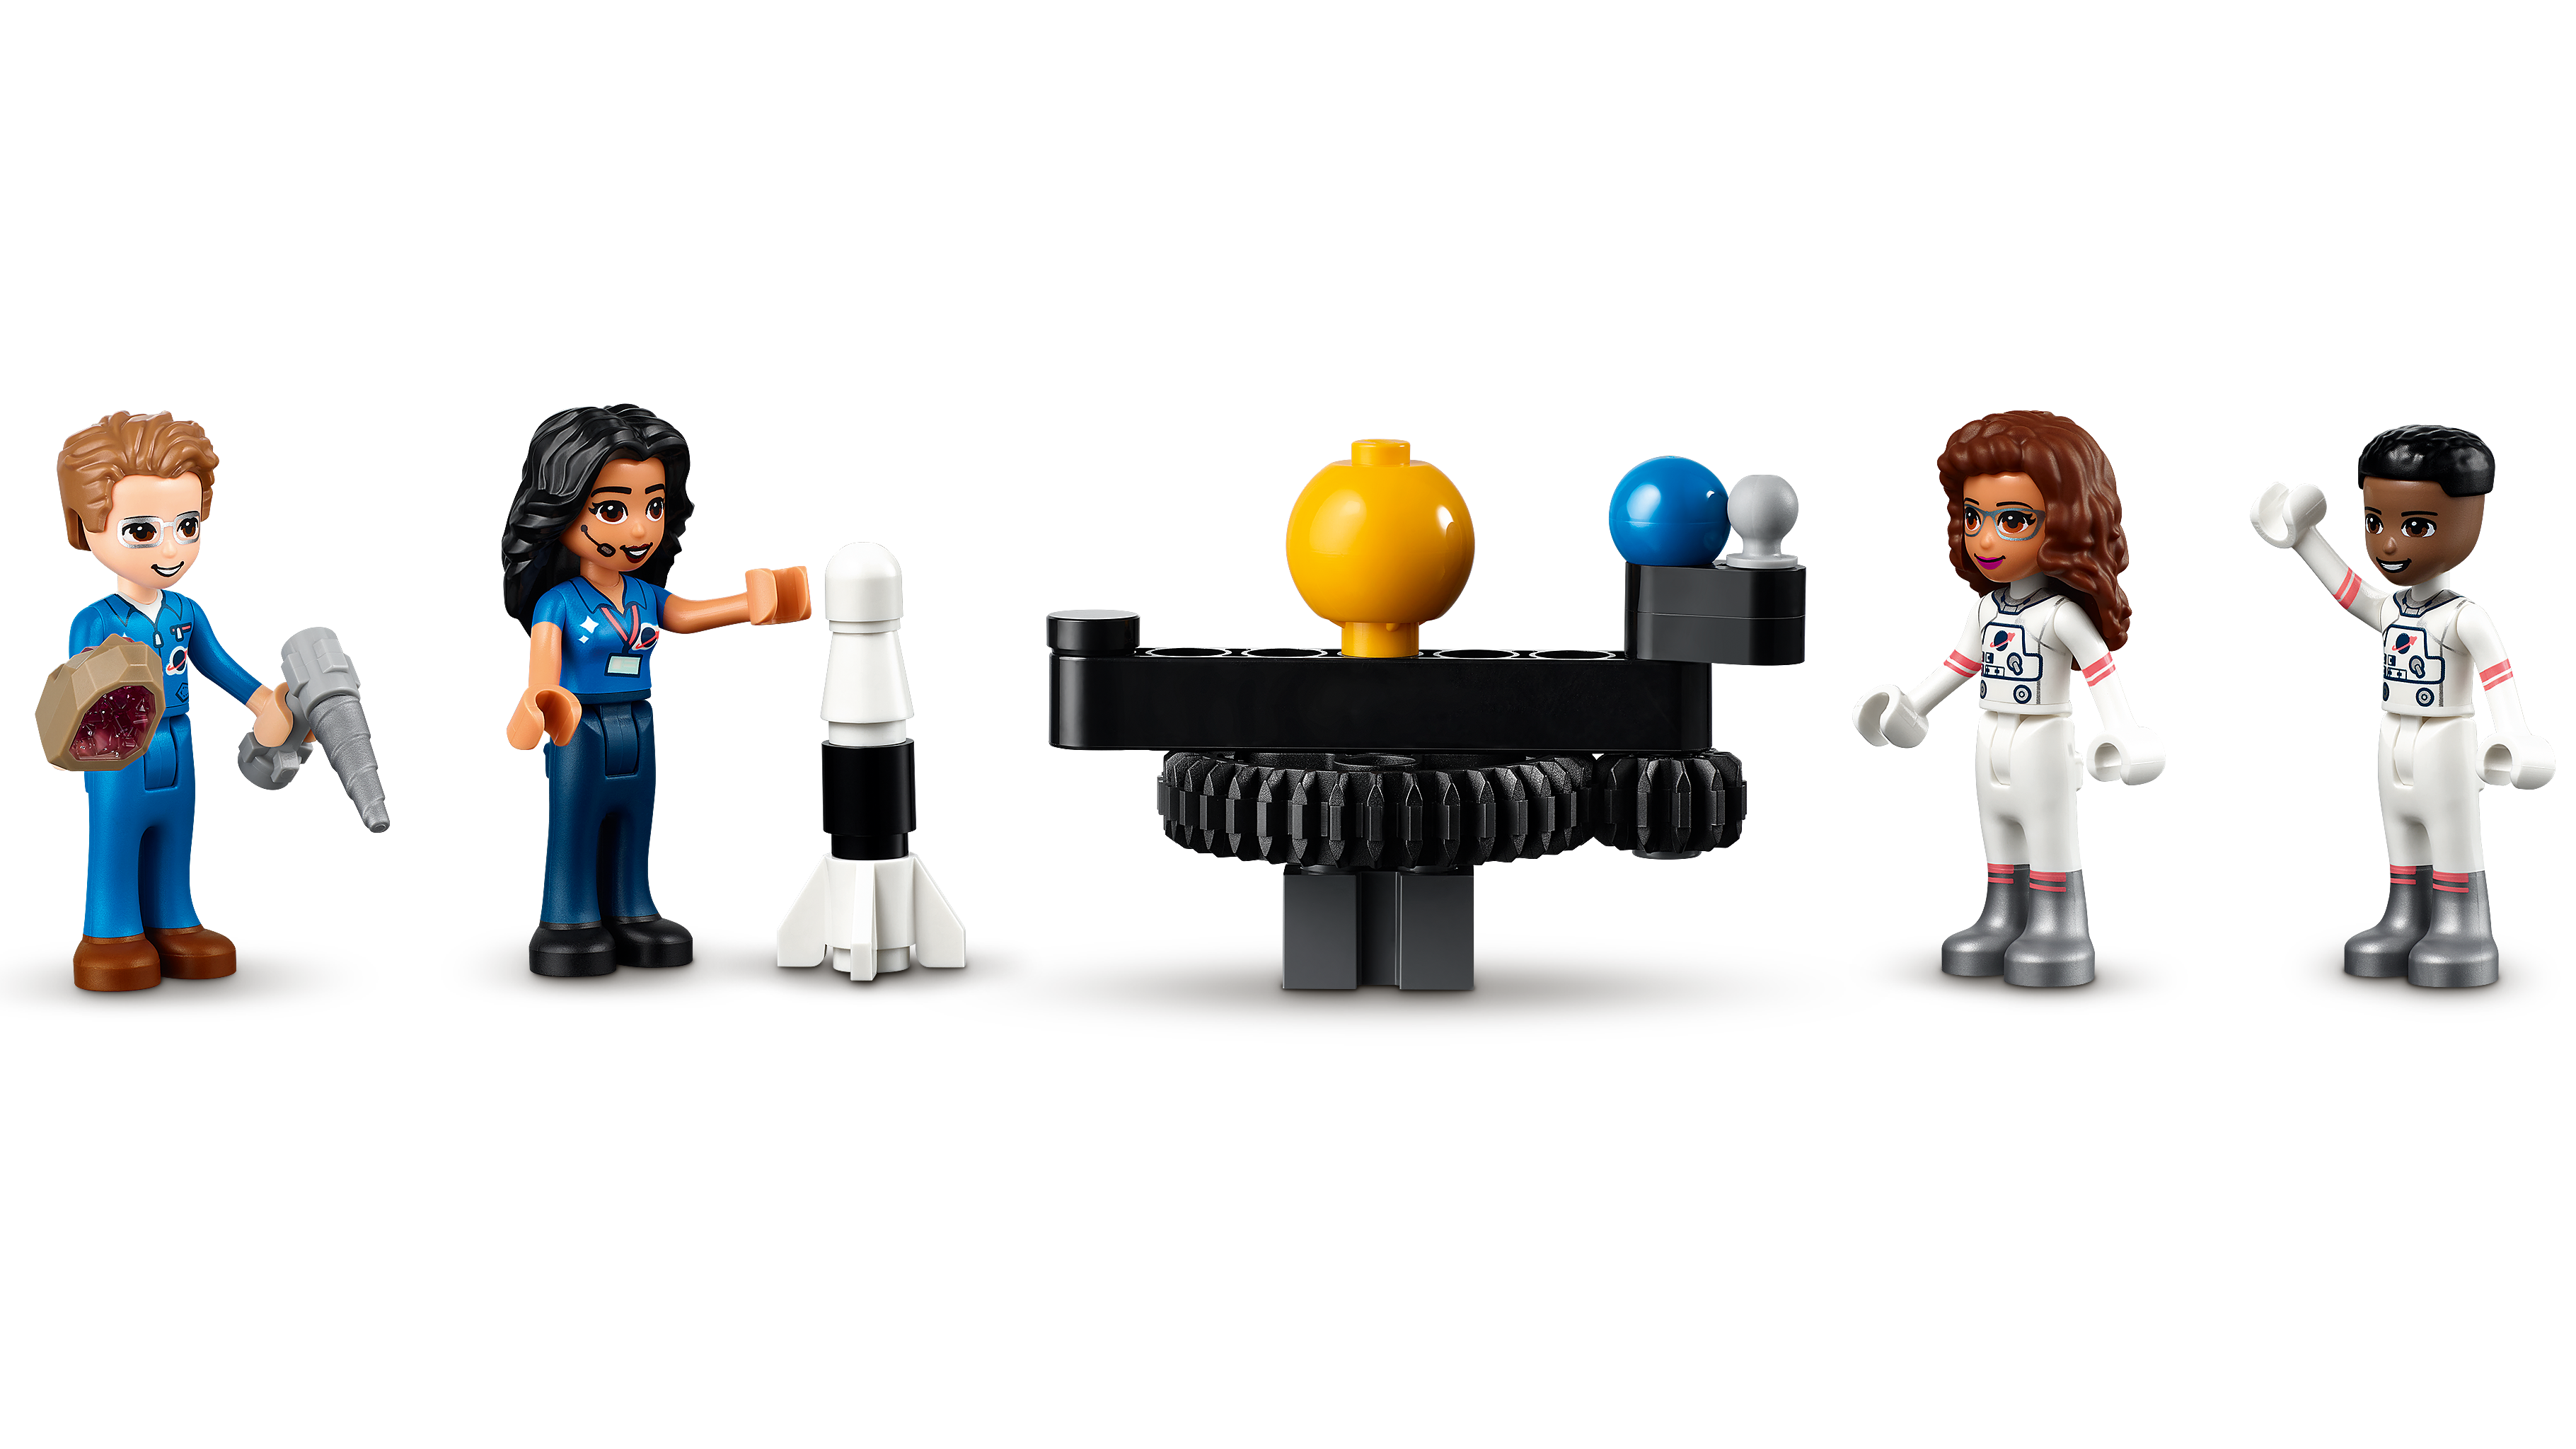 オリビアの宇宙アカデミー 41713 - レゴ®フレンズセット - LEGO.comキッズ